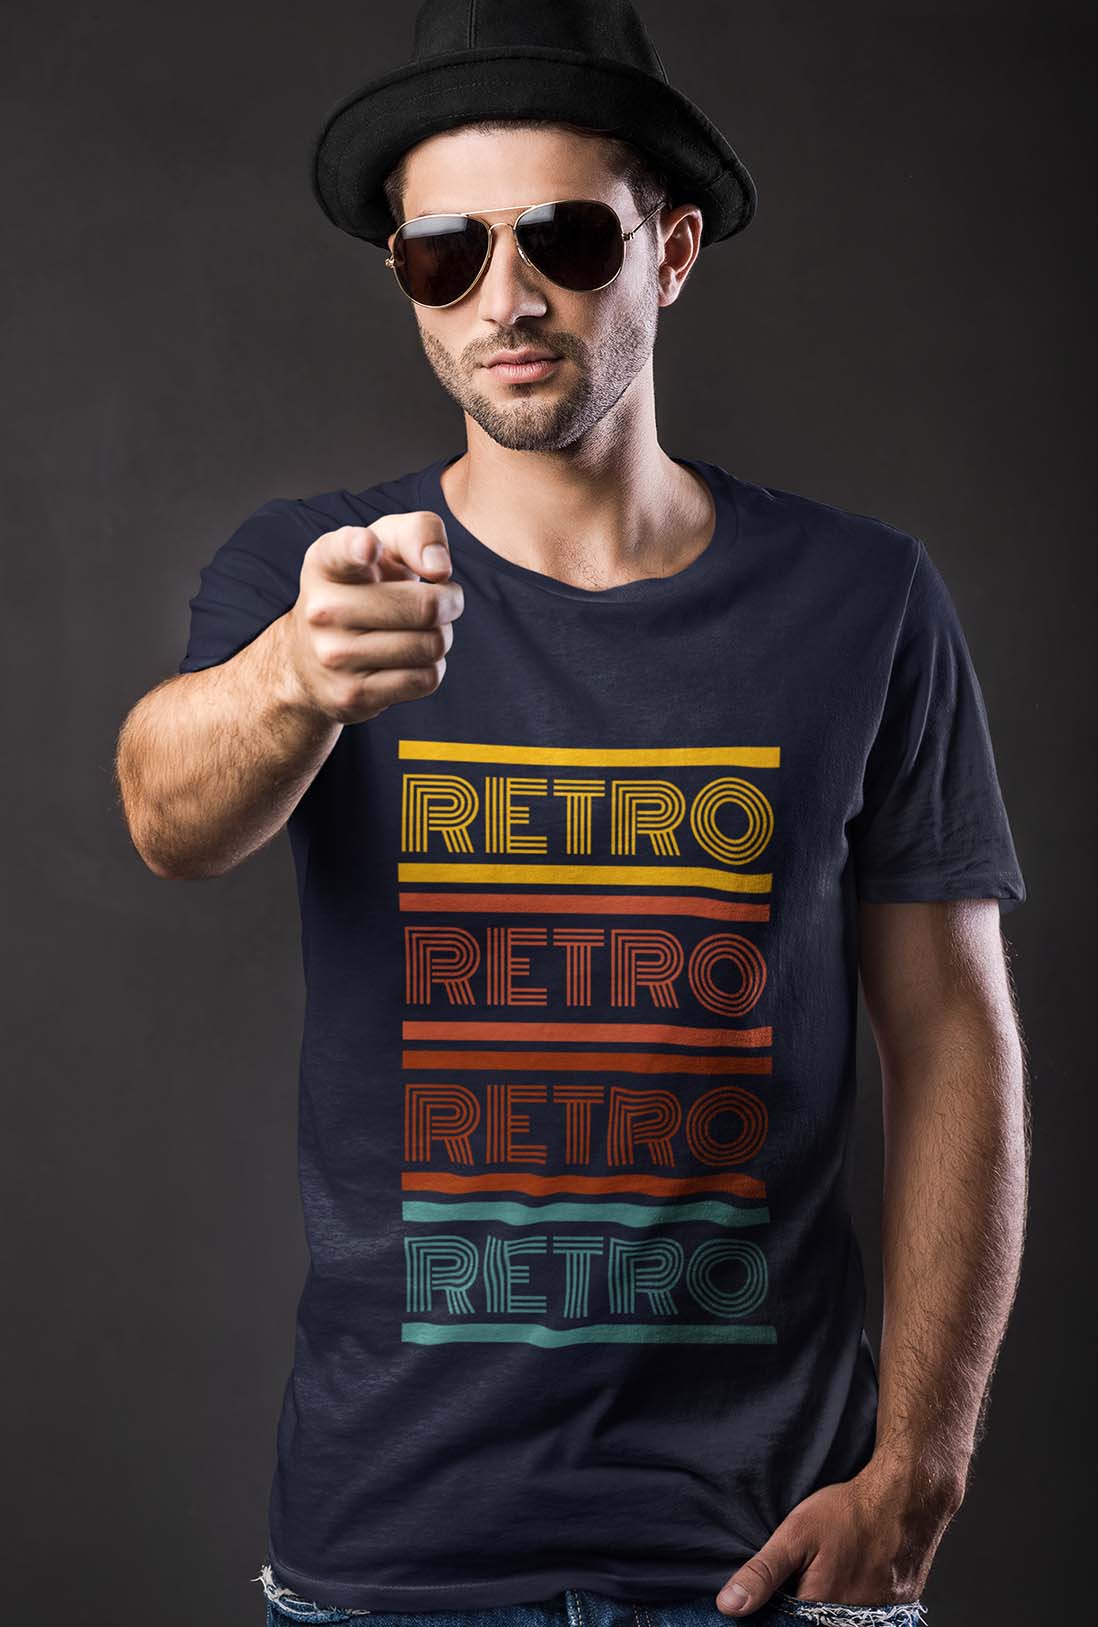 Retro Men's Cotton T-Shirt